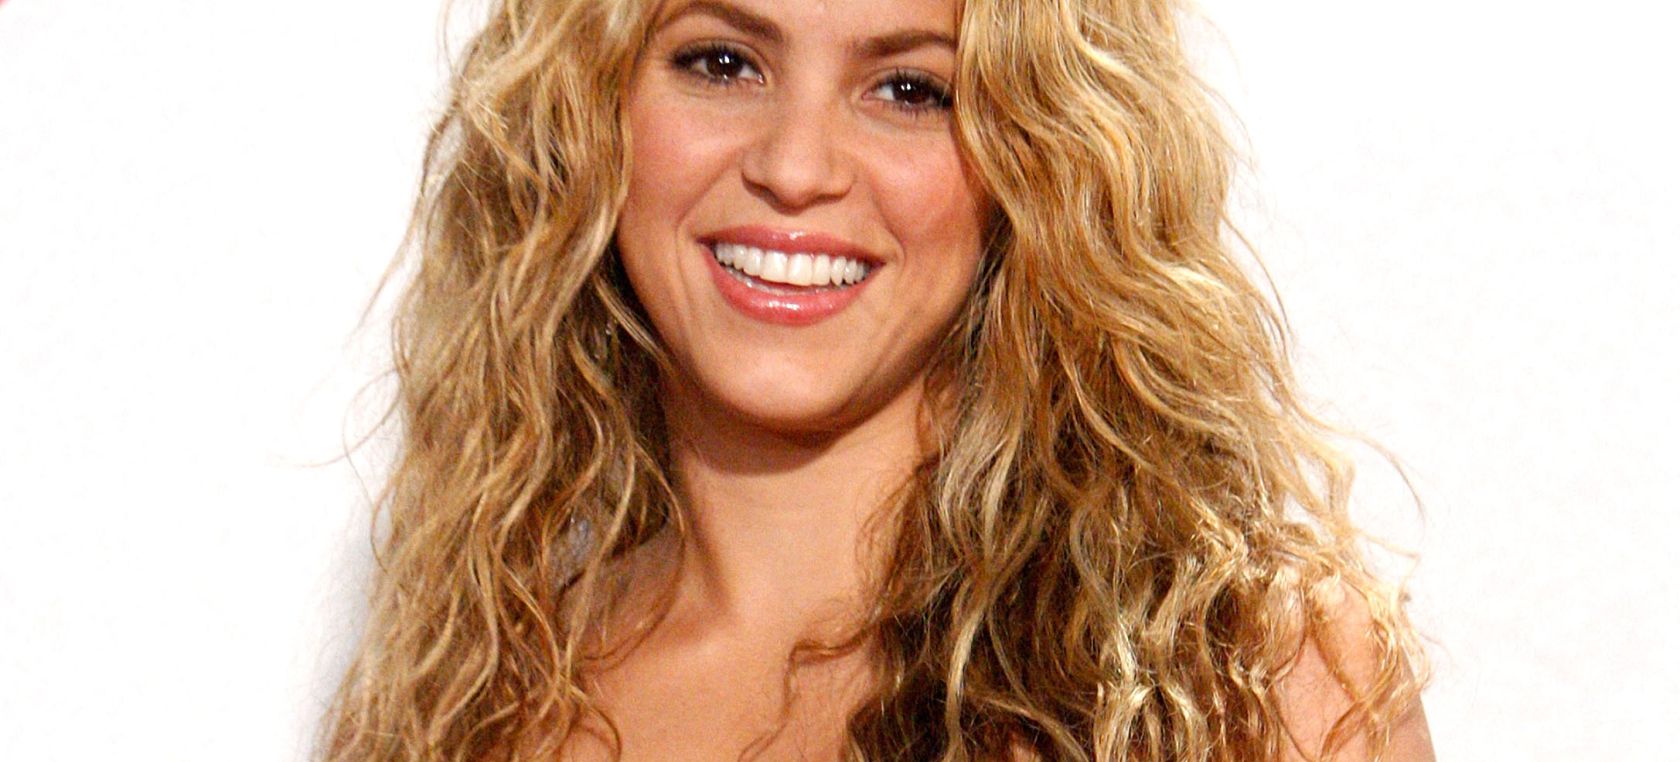 Shakira té un vincle amorós secret des de fa 15 anys